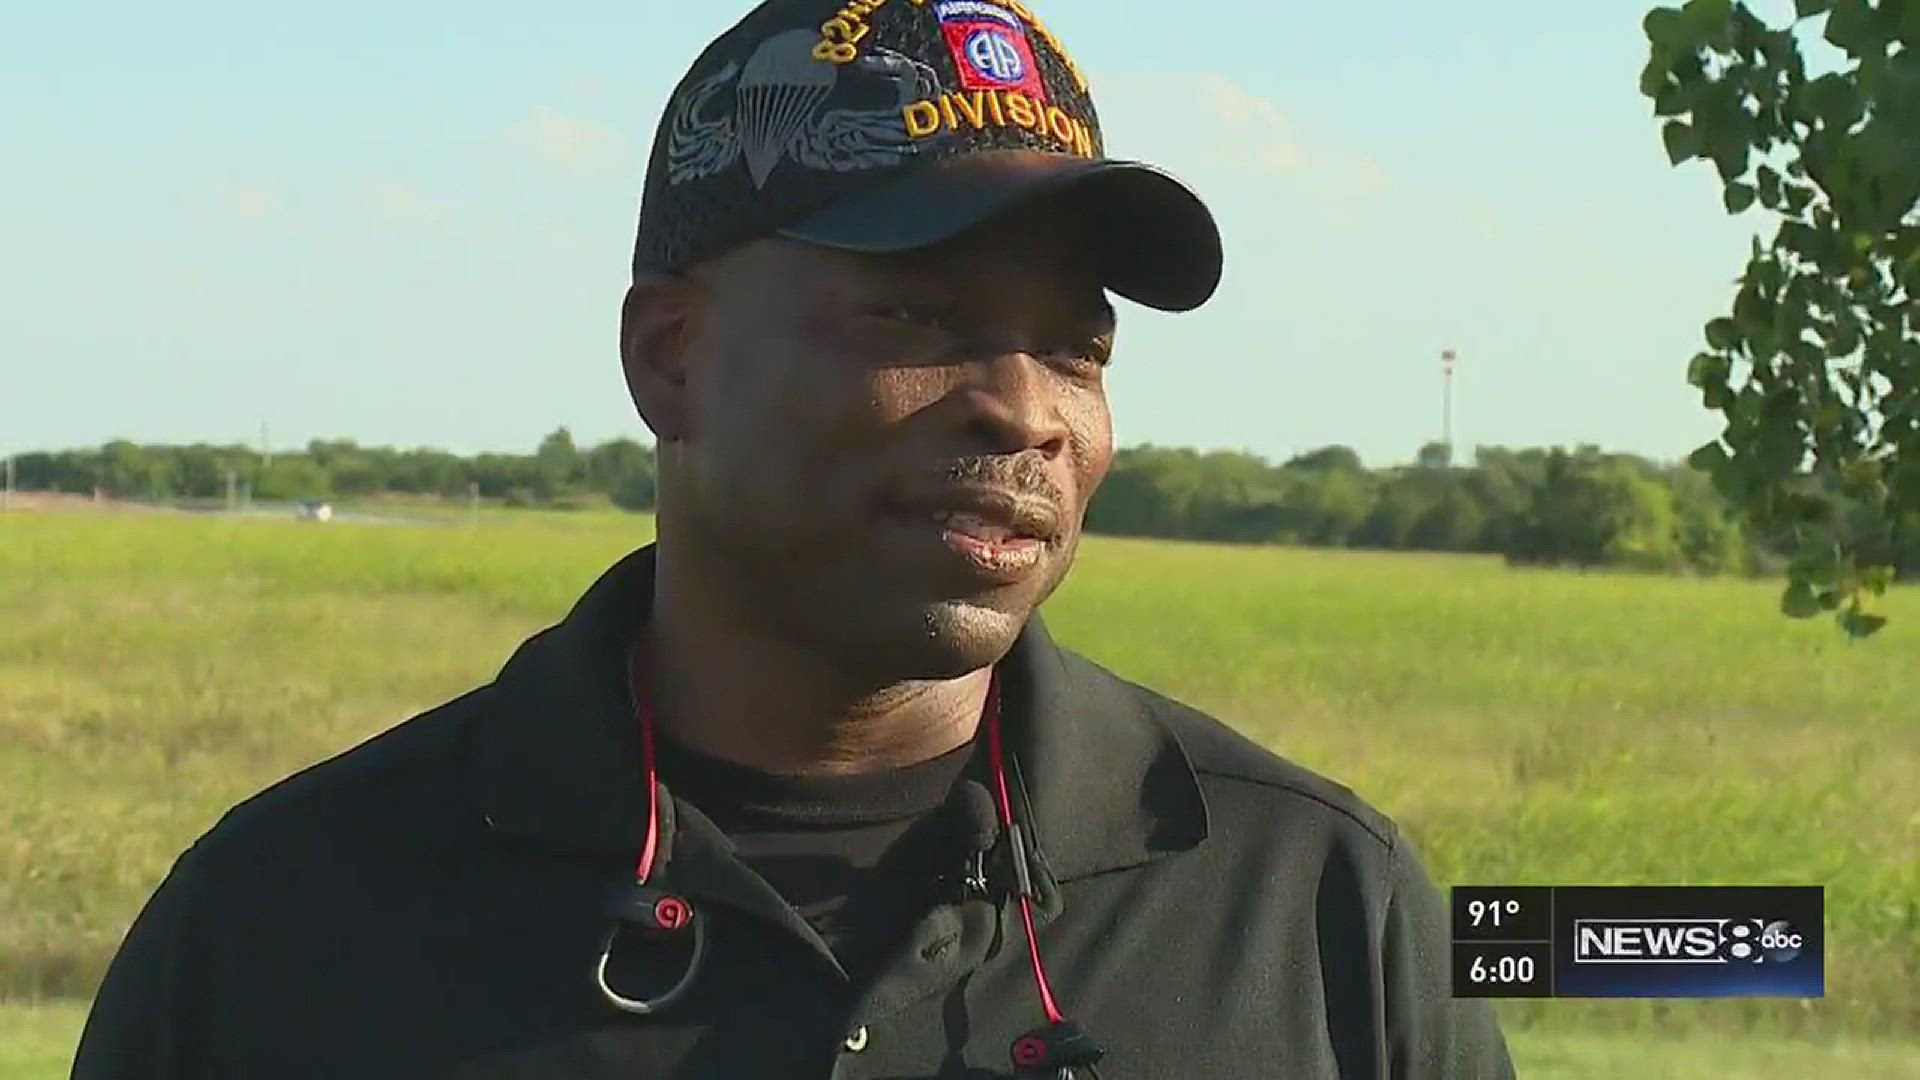 Man talks about seeing Micah Johnson at gun range before ambush